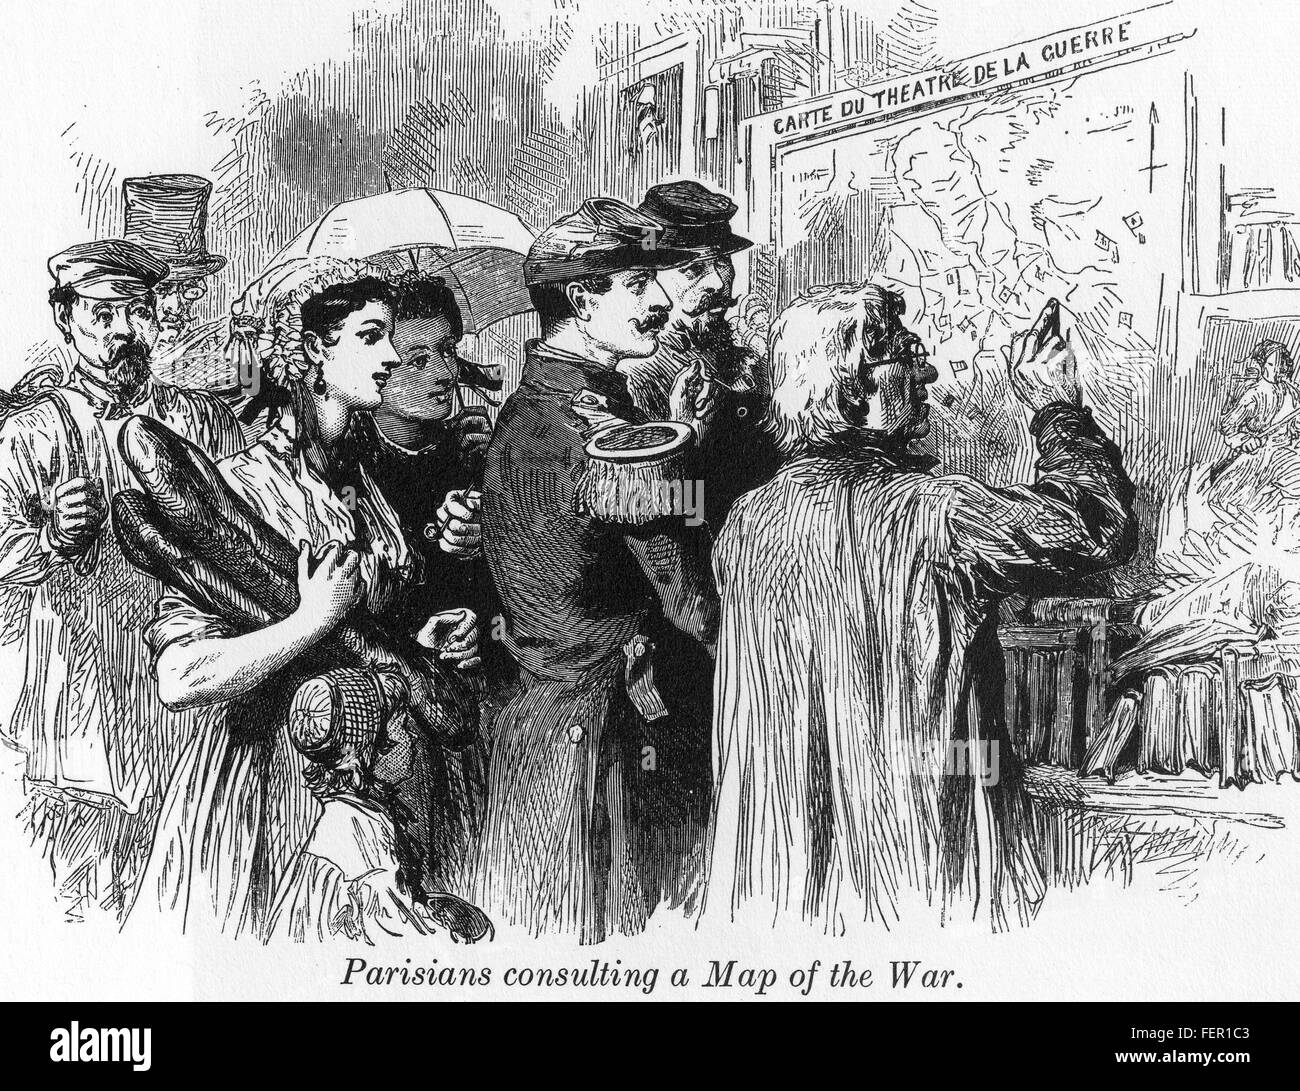 FRANCO-prussiana di guerra (1870-1871) parigini controllare una mappa per seguire i progressi della guerra Foto Stock